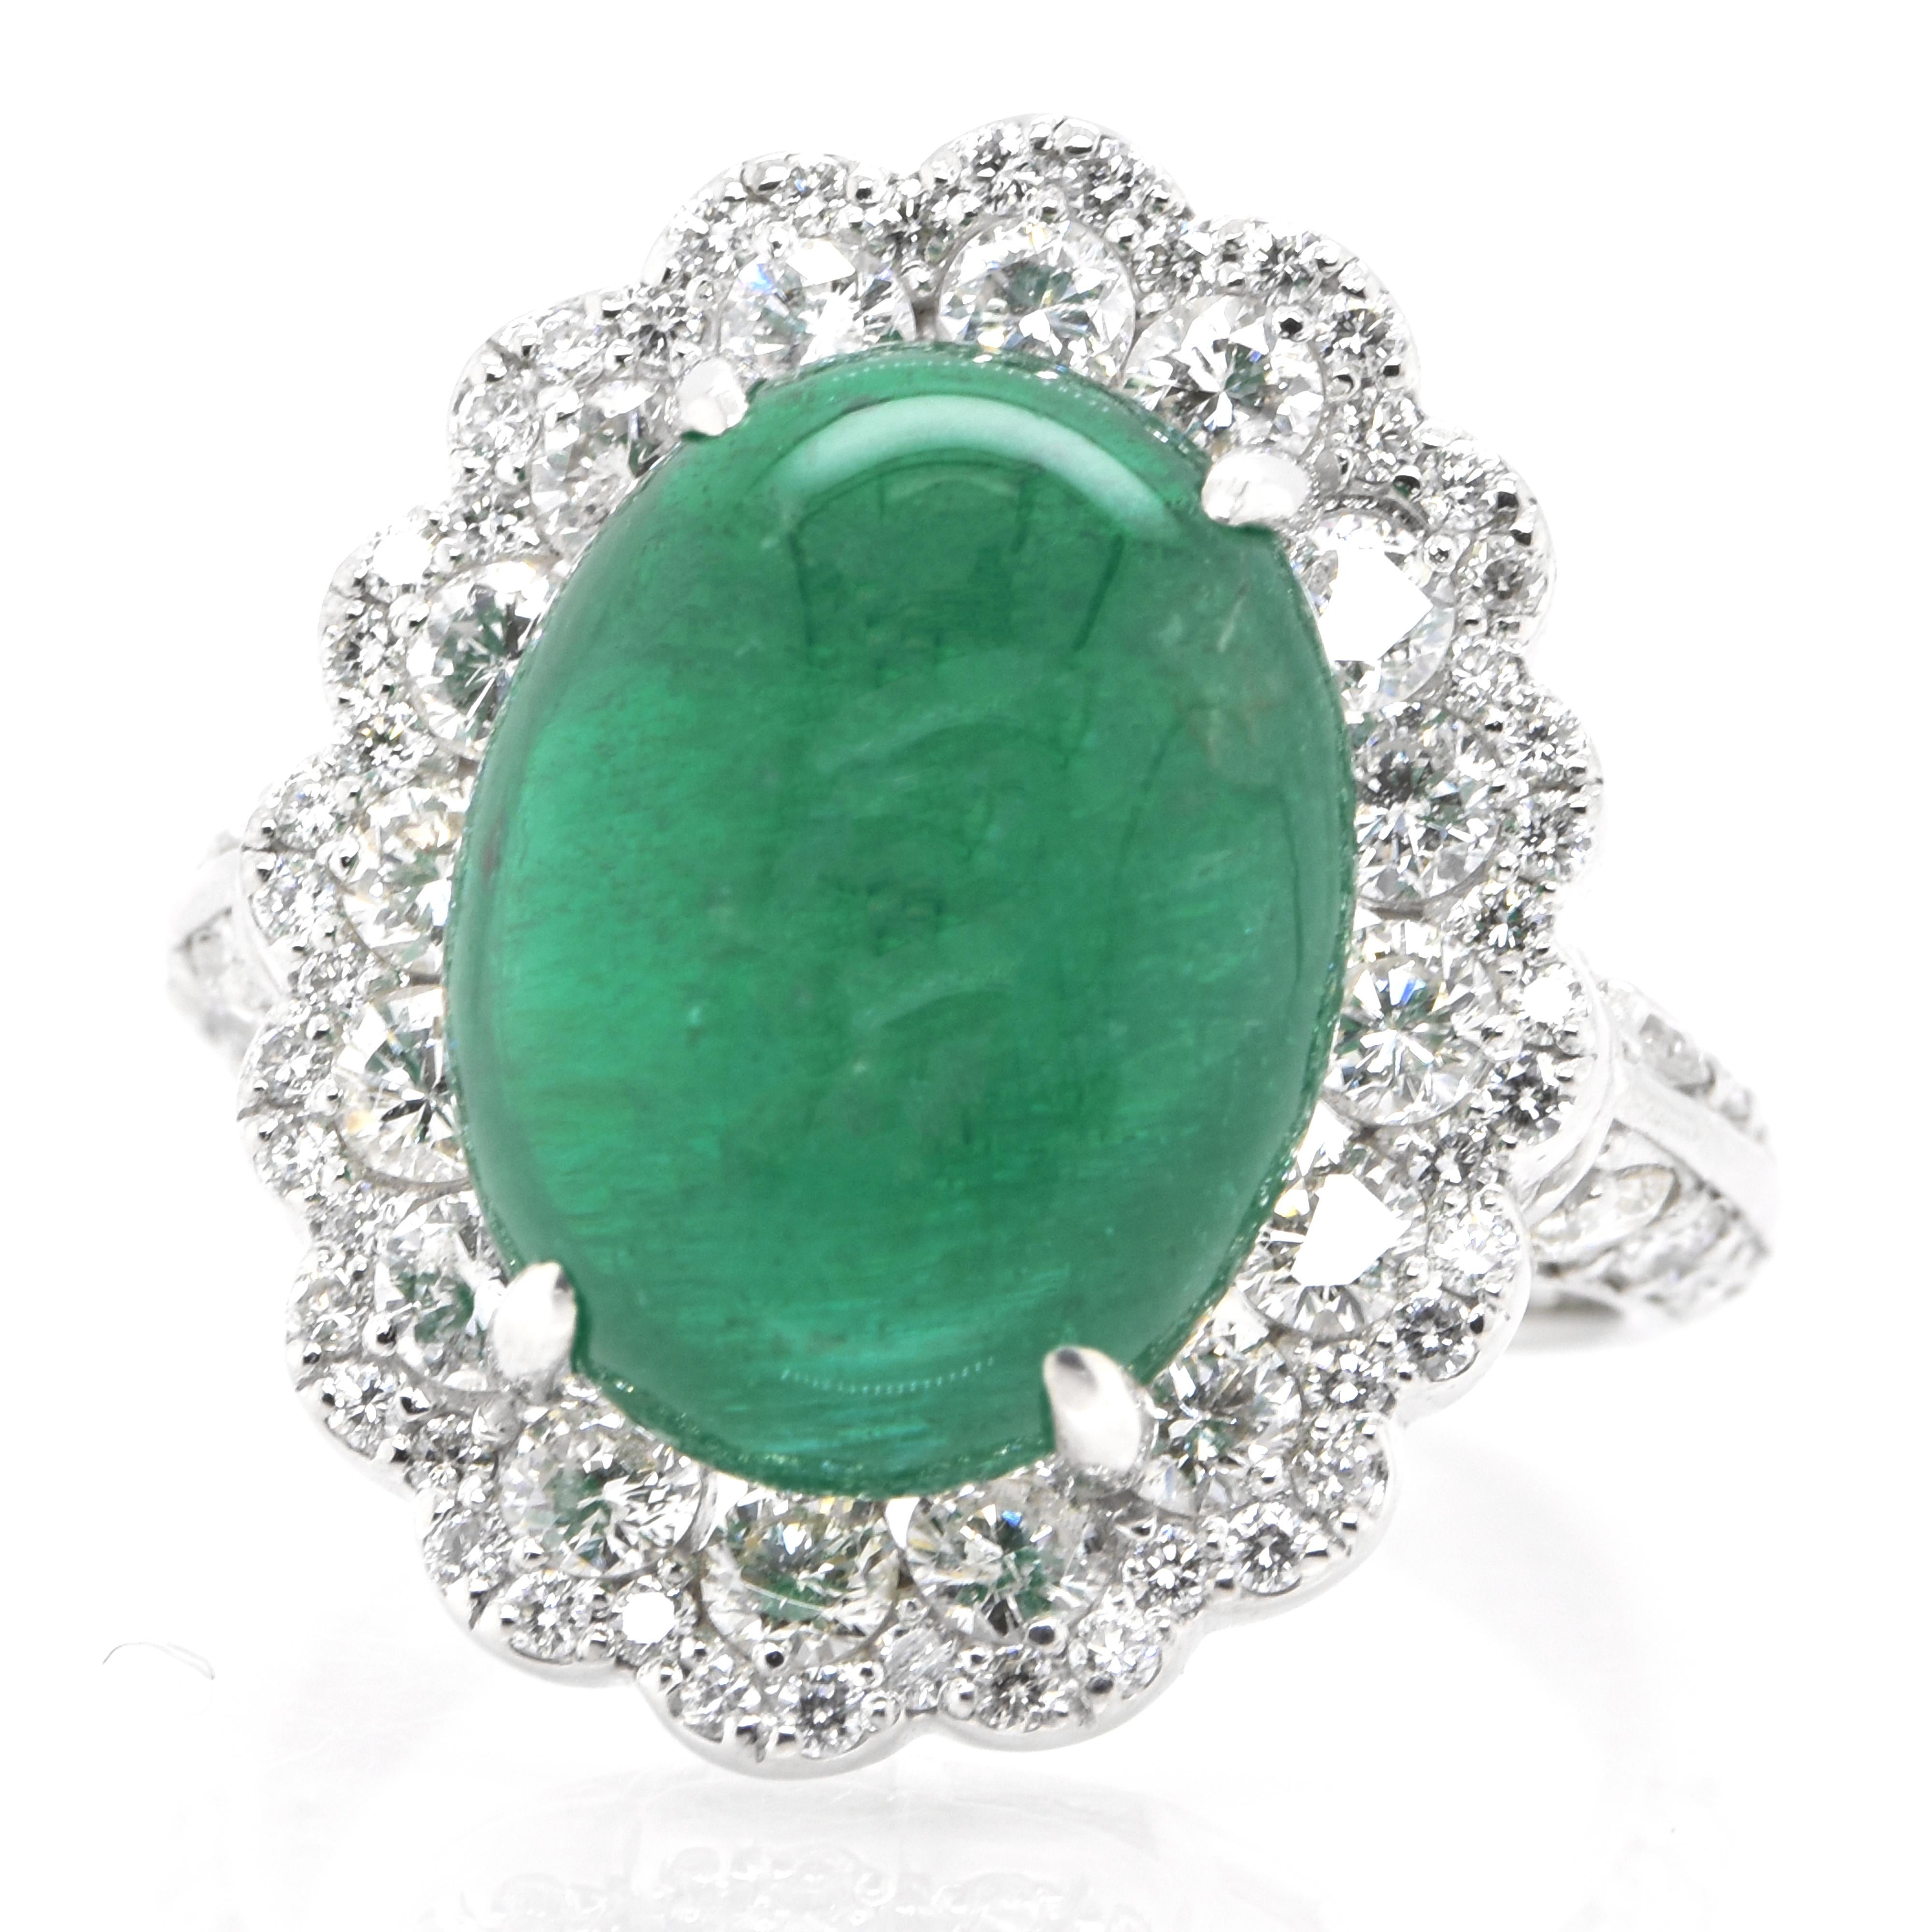 Ein atemberaubender Ring mit einem natürlichen sambischen Smaragd-Cabochon von 8,18 Karat und 1,50 Karat Diamant-Akzenten in Platin gefasst. Seit Tausenden von Jahren bewundern die Menschen das Grün des Smaragds. Smaragde werden seit jeher mit den